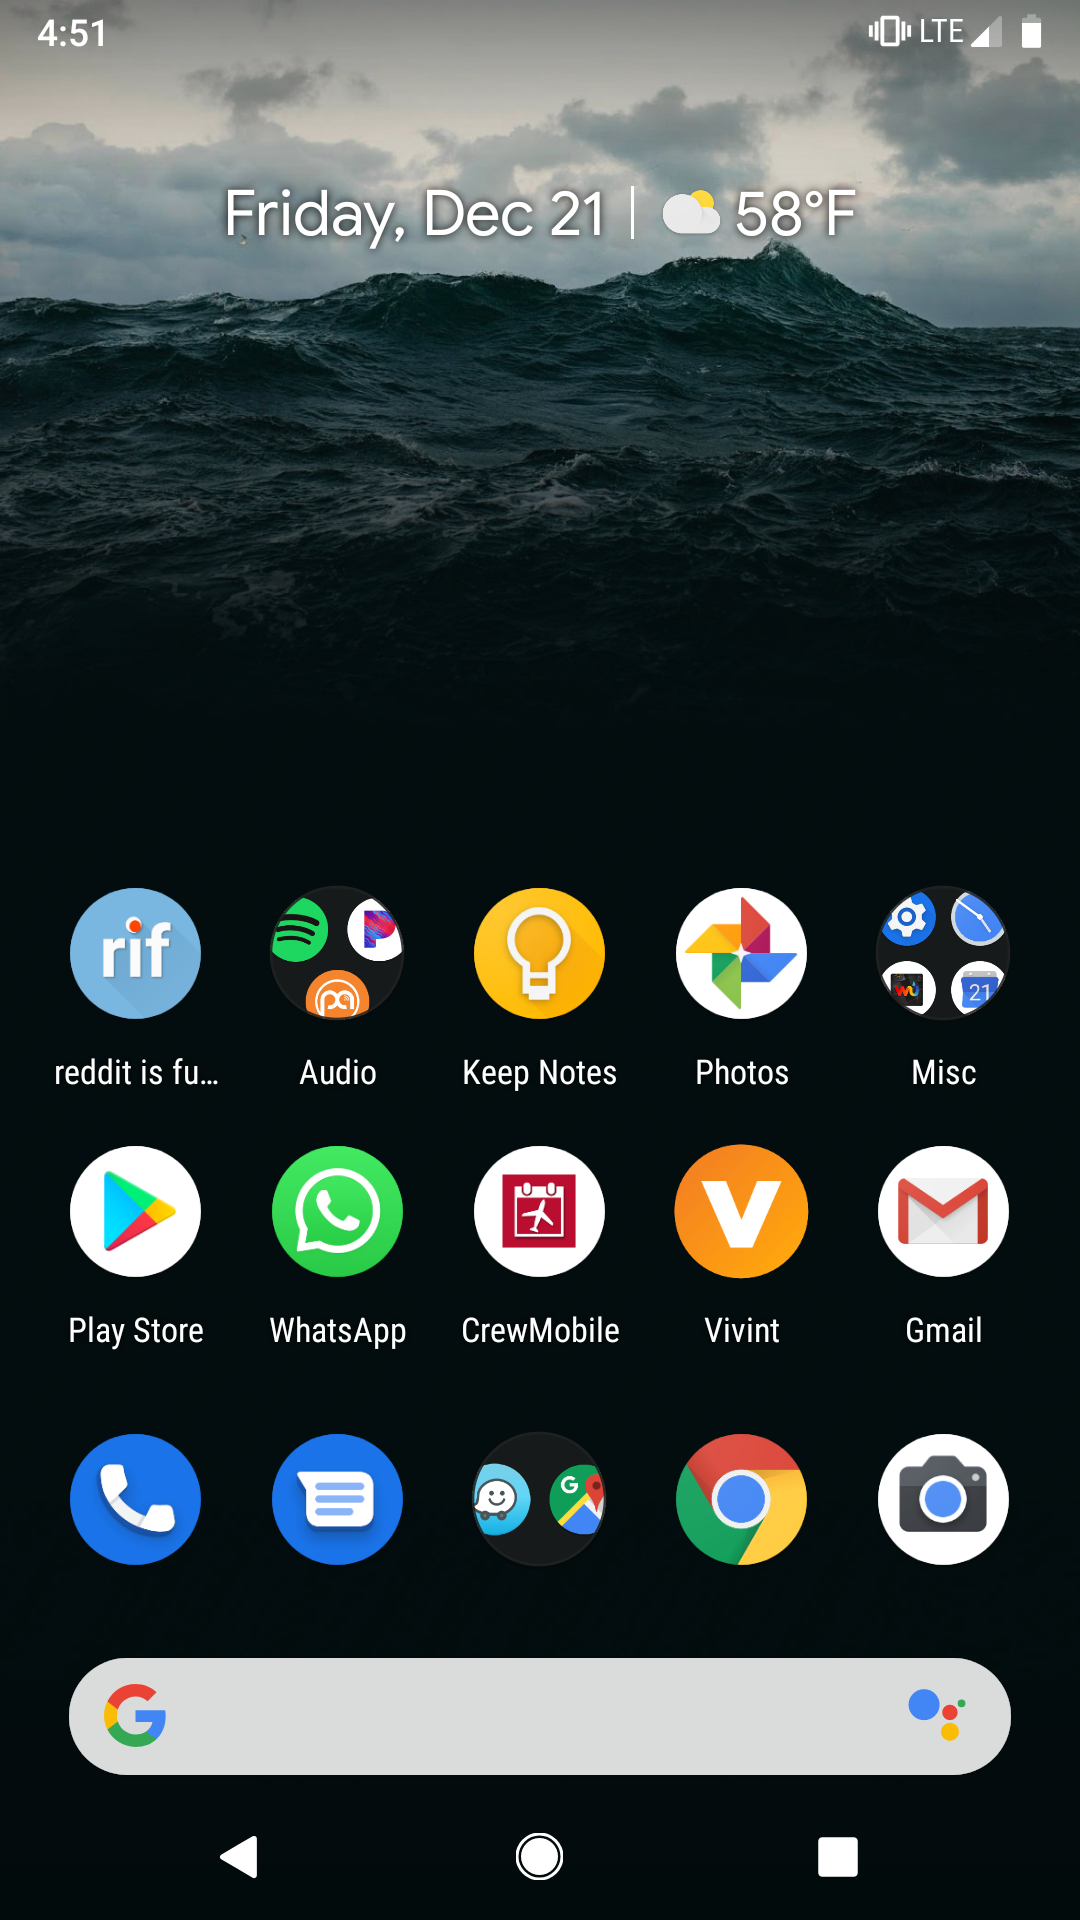 App Shortcuts Menu Android - 1080x1920 Wallpaper 